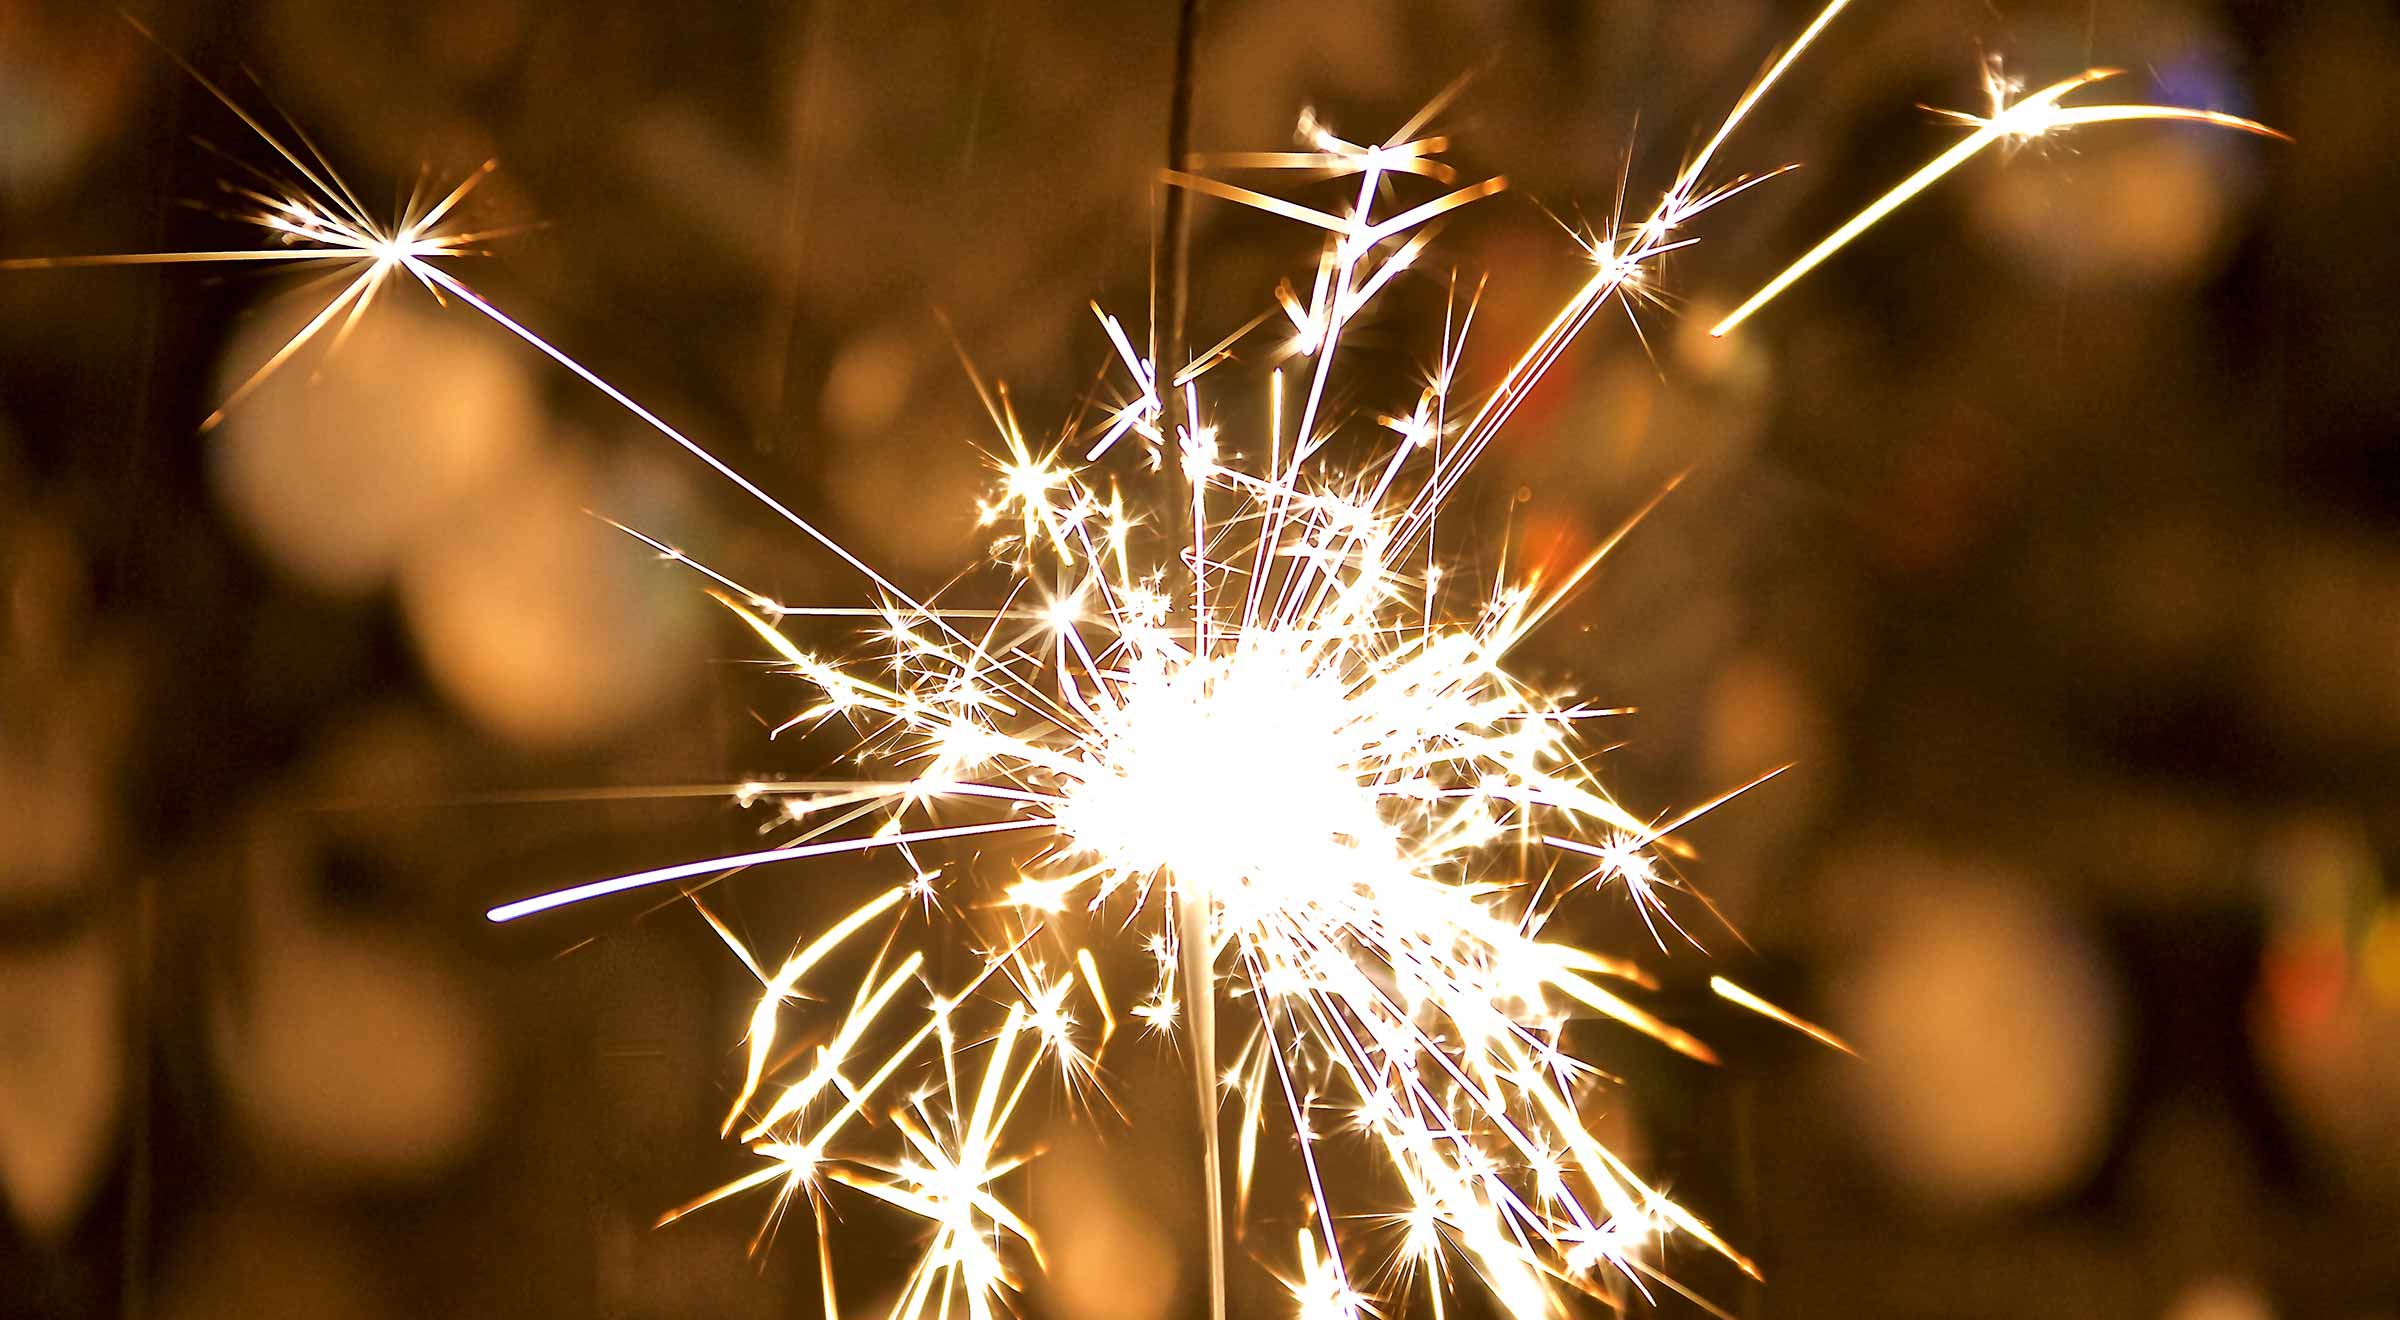 Close-up image of a sparkler burning